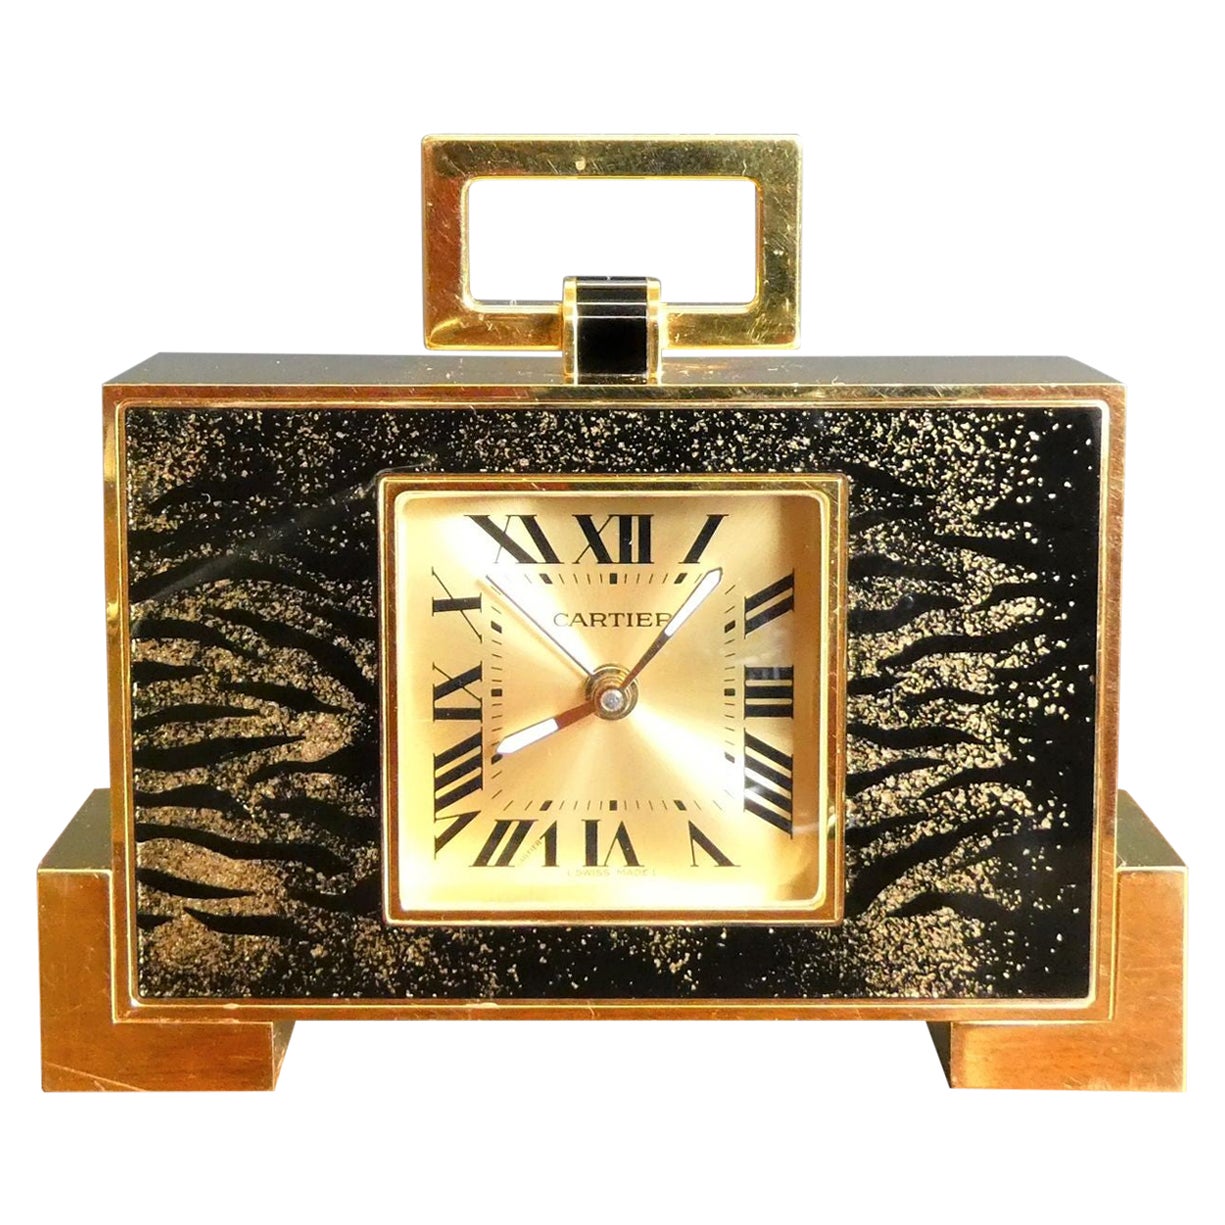 Cartier, horloge de voyage imprimée léopard